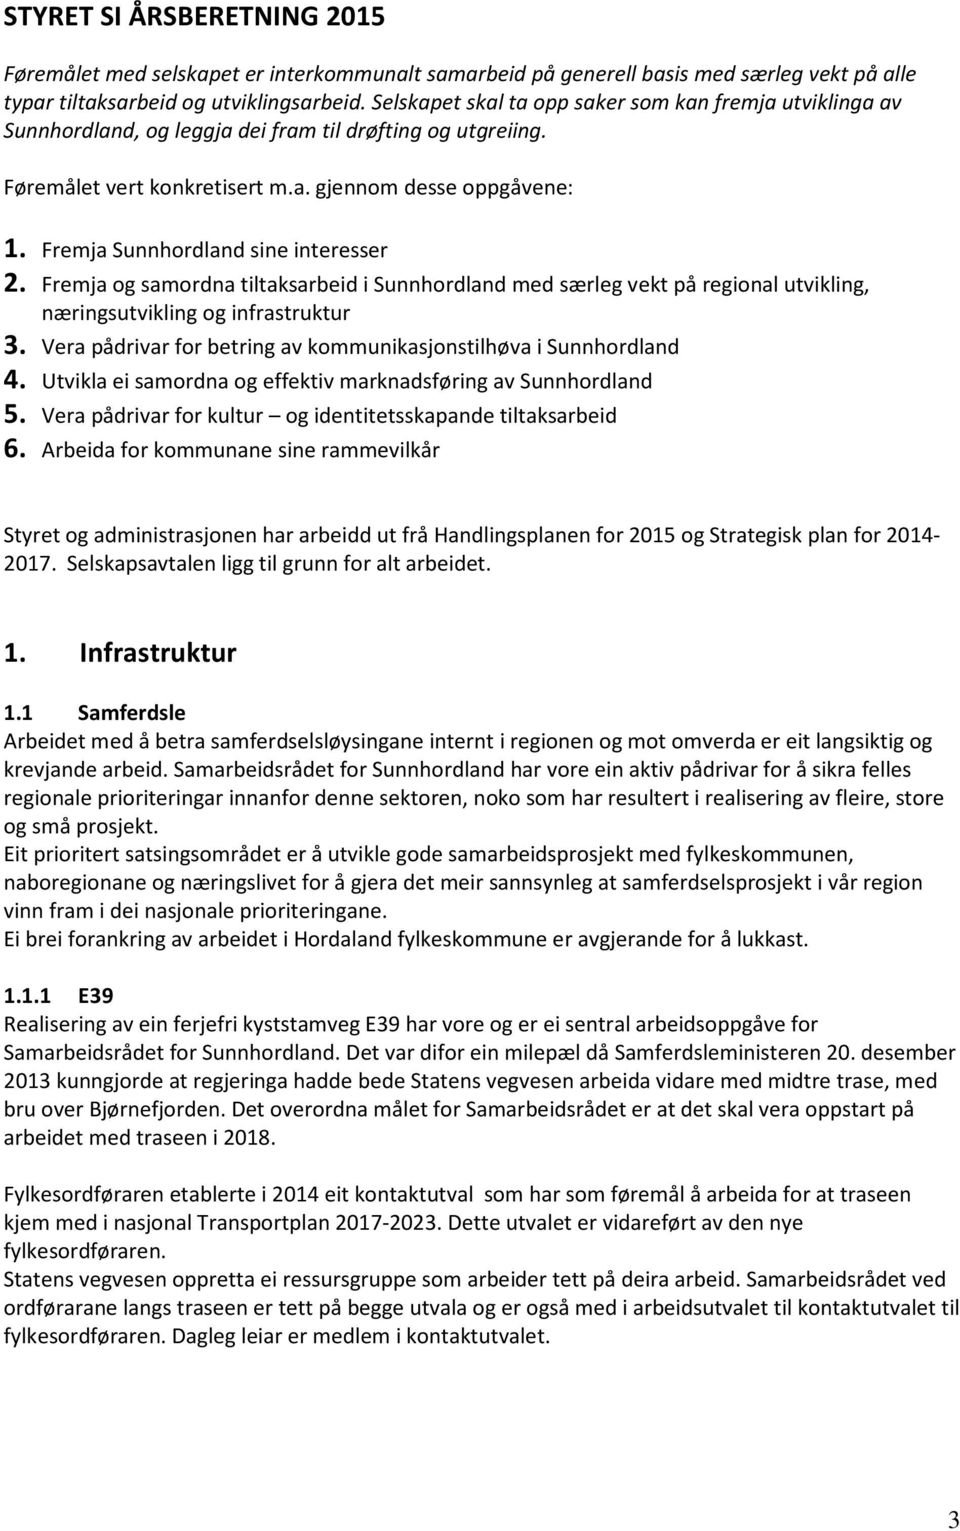 Fremja Sunnhordland sine interesser 2. Fremja og samordna tiltaksarbeid i Sunnhordland med særleg vekt på regional utvikling, næringsutvikling og infrastruktur 3.